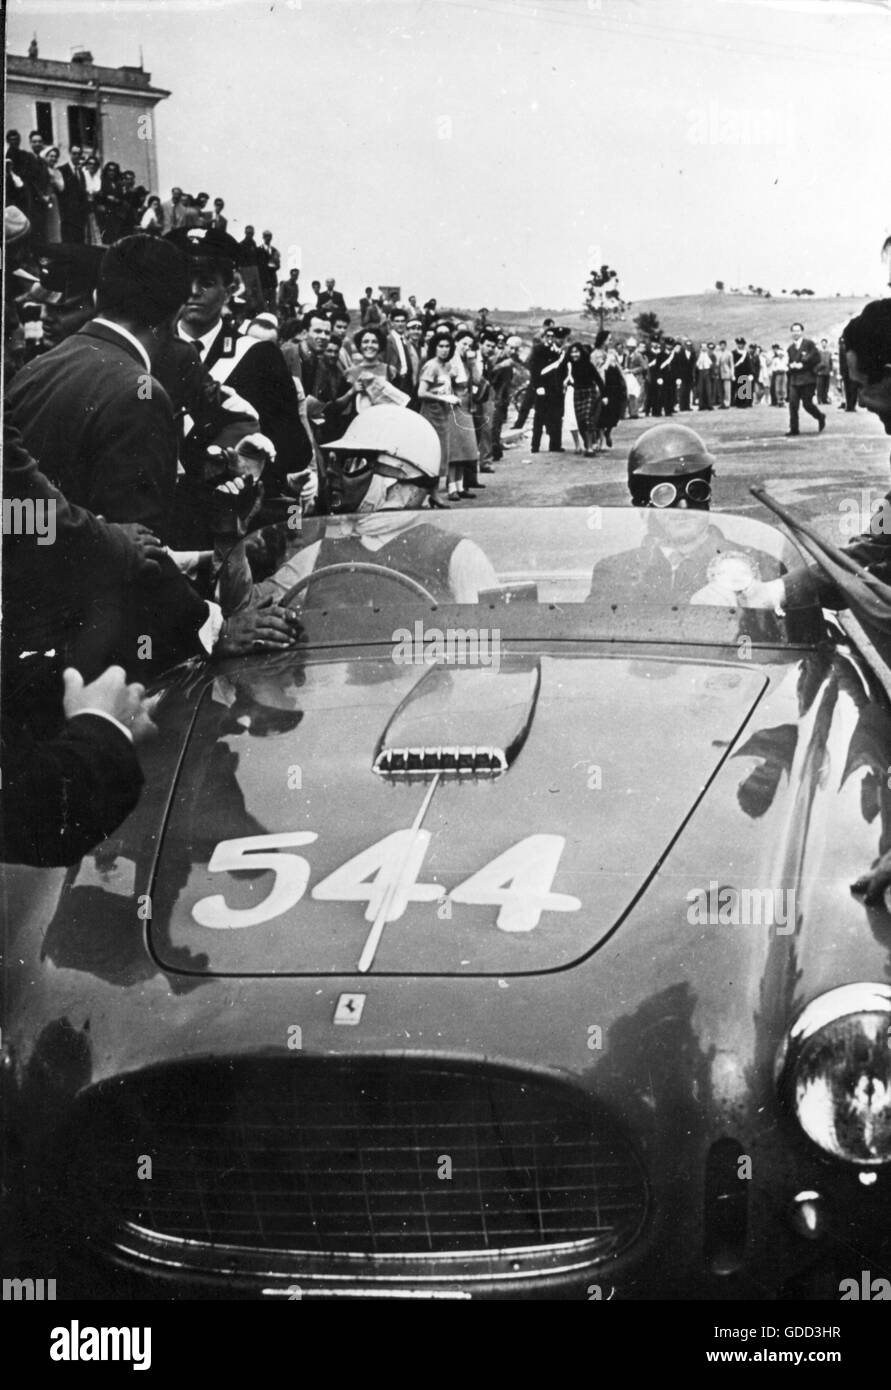 Rossellini, Roberto, 8.5.1906 - 3.6.1977, direttore italiano, a metà corsa, come partecipante alla gara automobilistica "ille miglia", Roma, 28.4.1953, Foto Stock